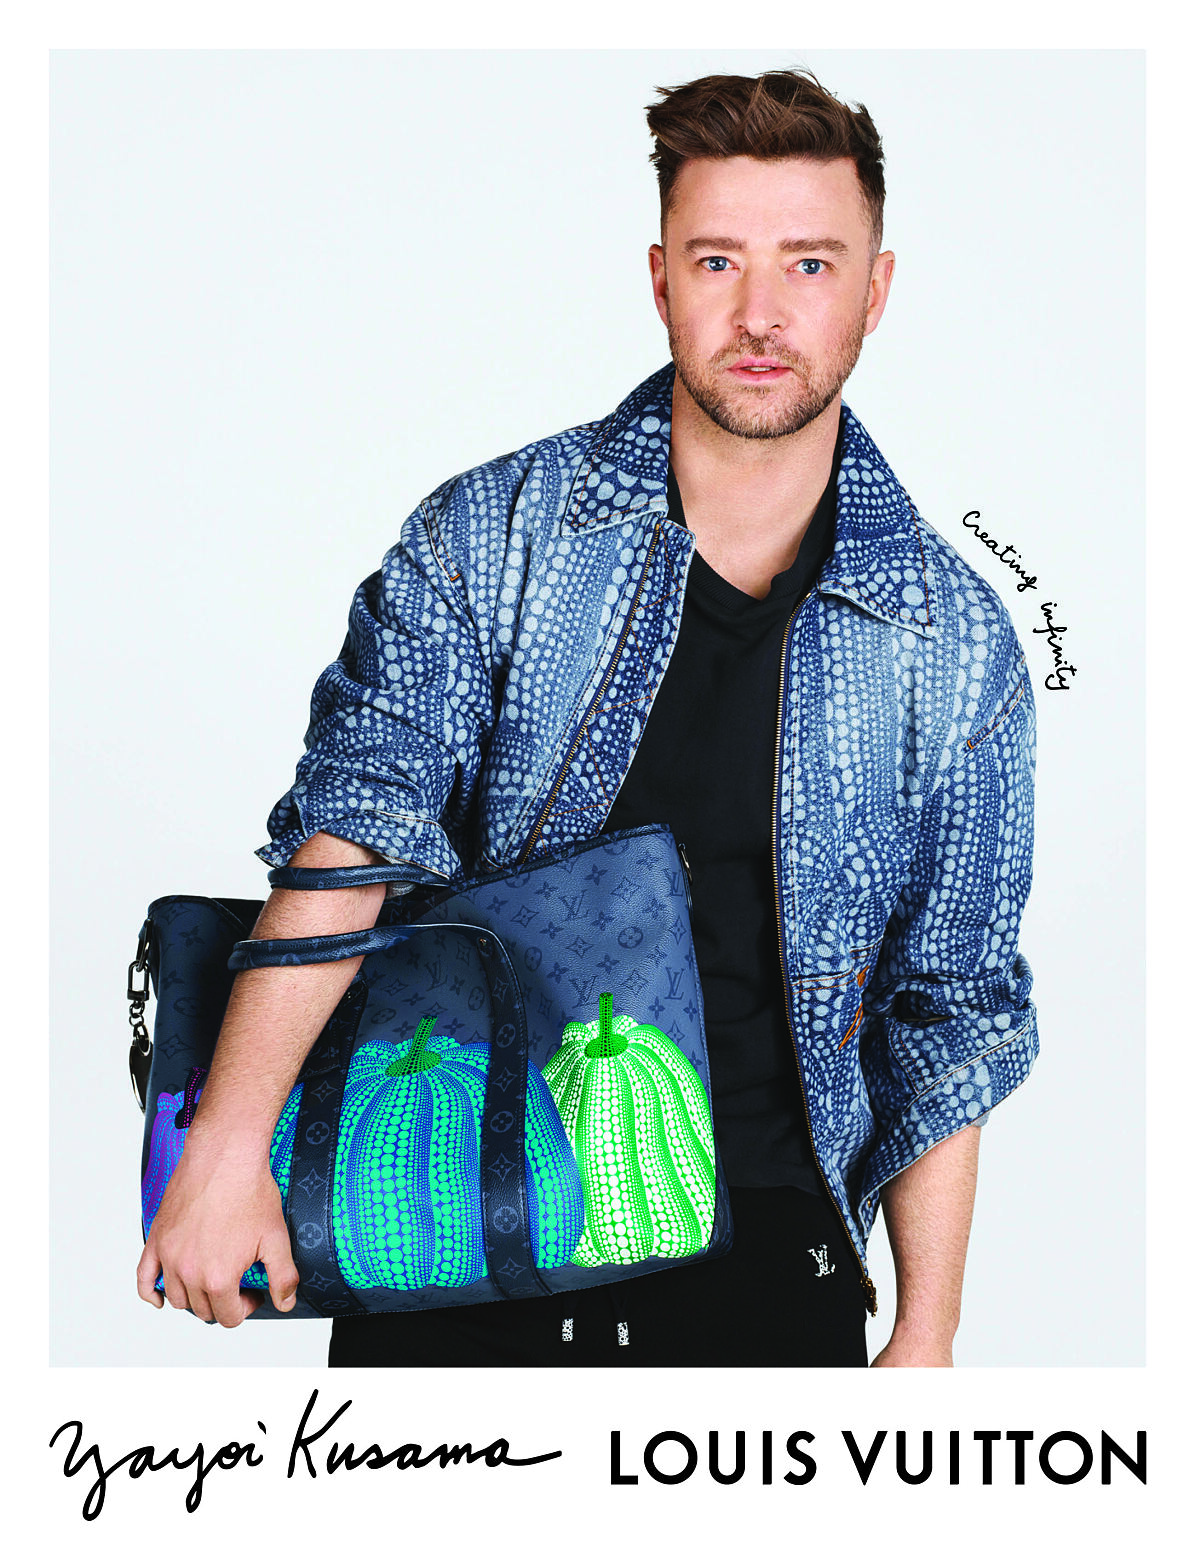 Louis Vuitton x Yayoi Kusama_Drop 2_Campaign - Justin Timberlake (2)